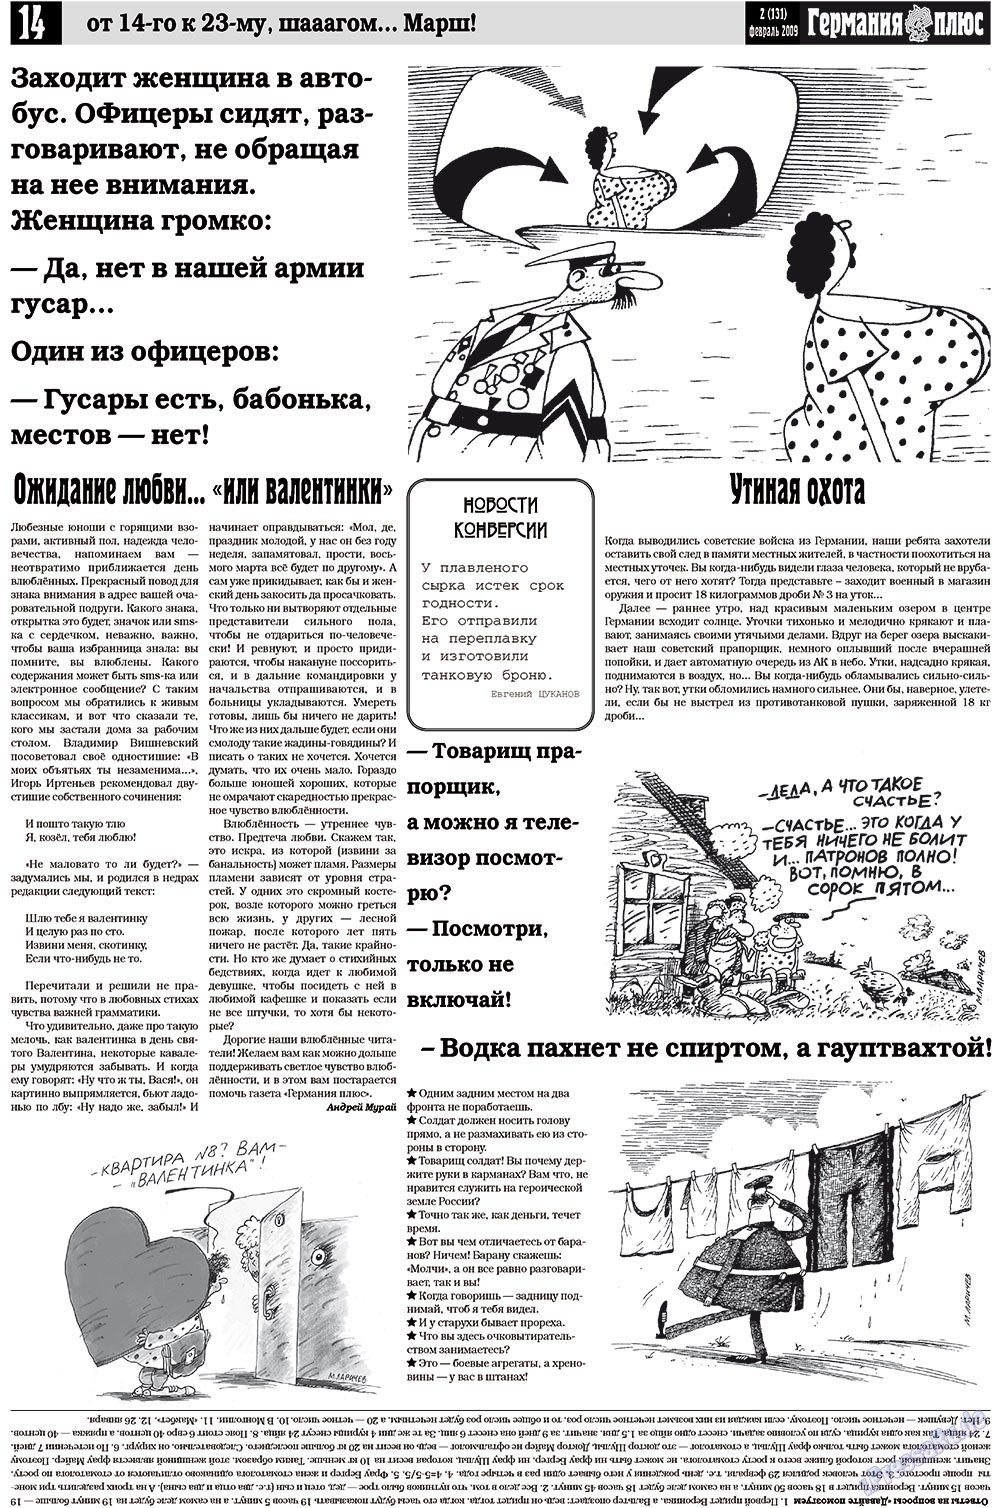 Германия плюс, газета. 2009 №2 стр.18